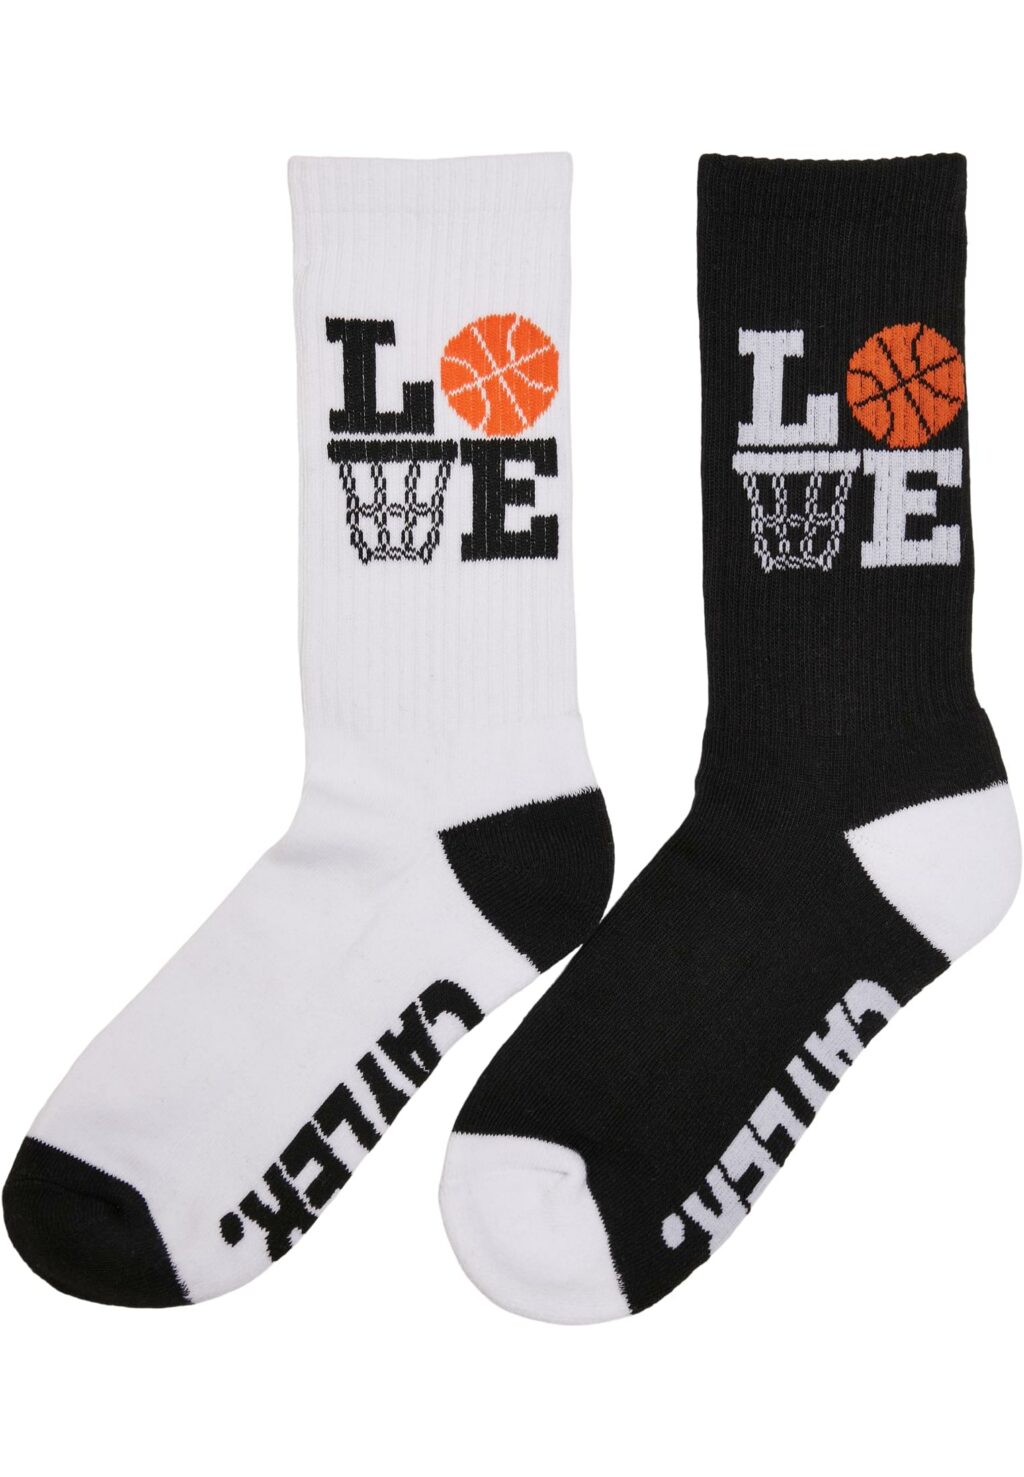 Love Ballin Socks 2-Pack black/white CS2995